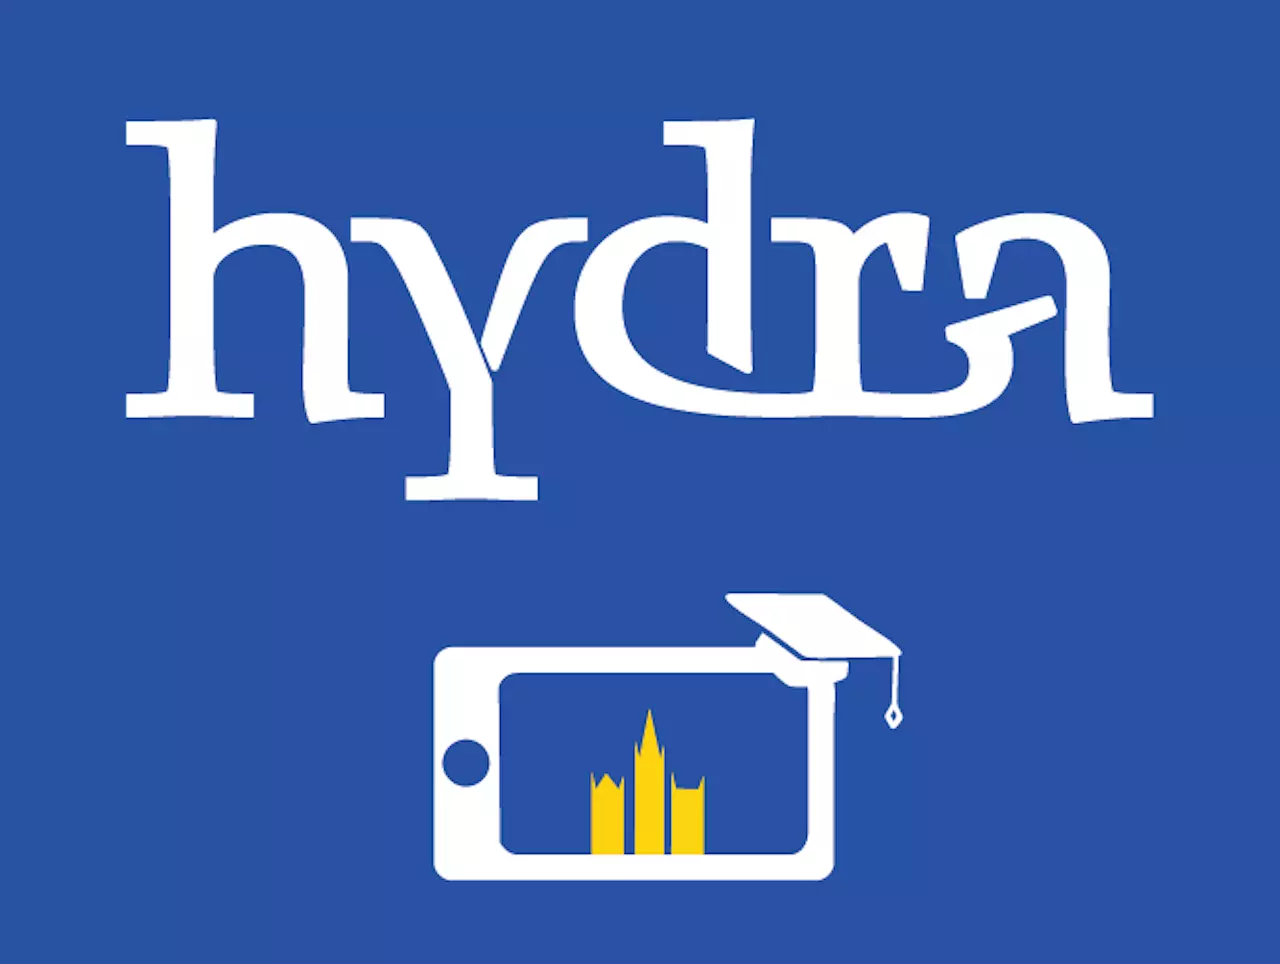 Hydra iOS app - Zeus WPI - Ghent University